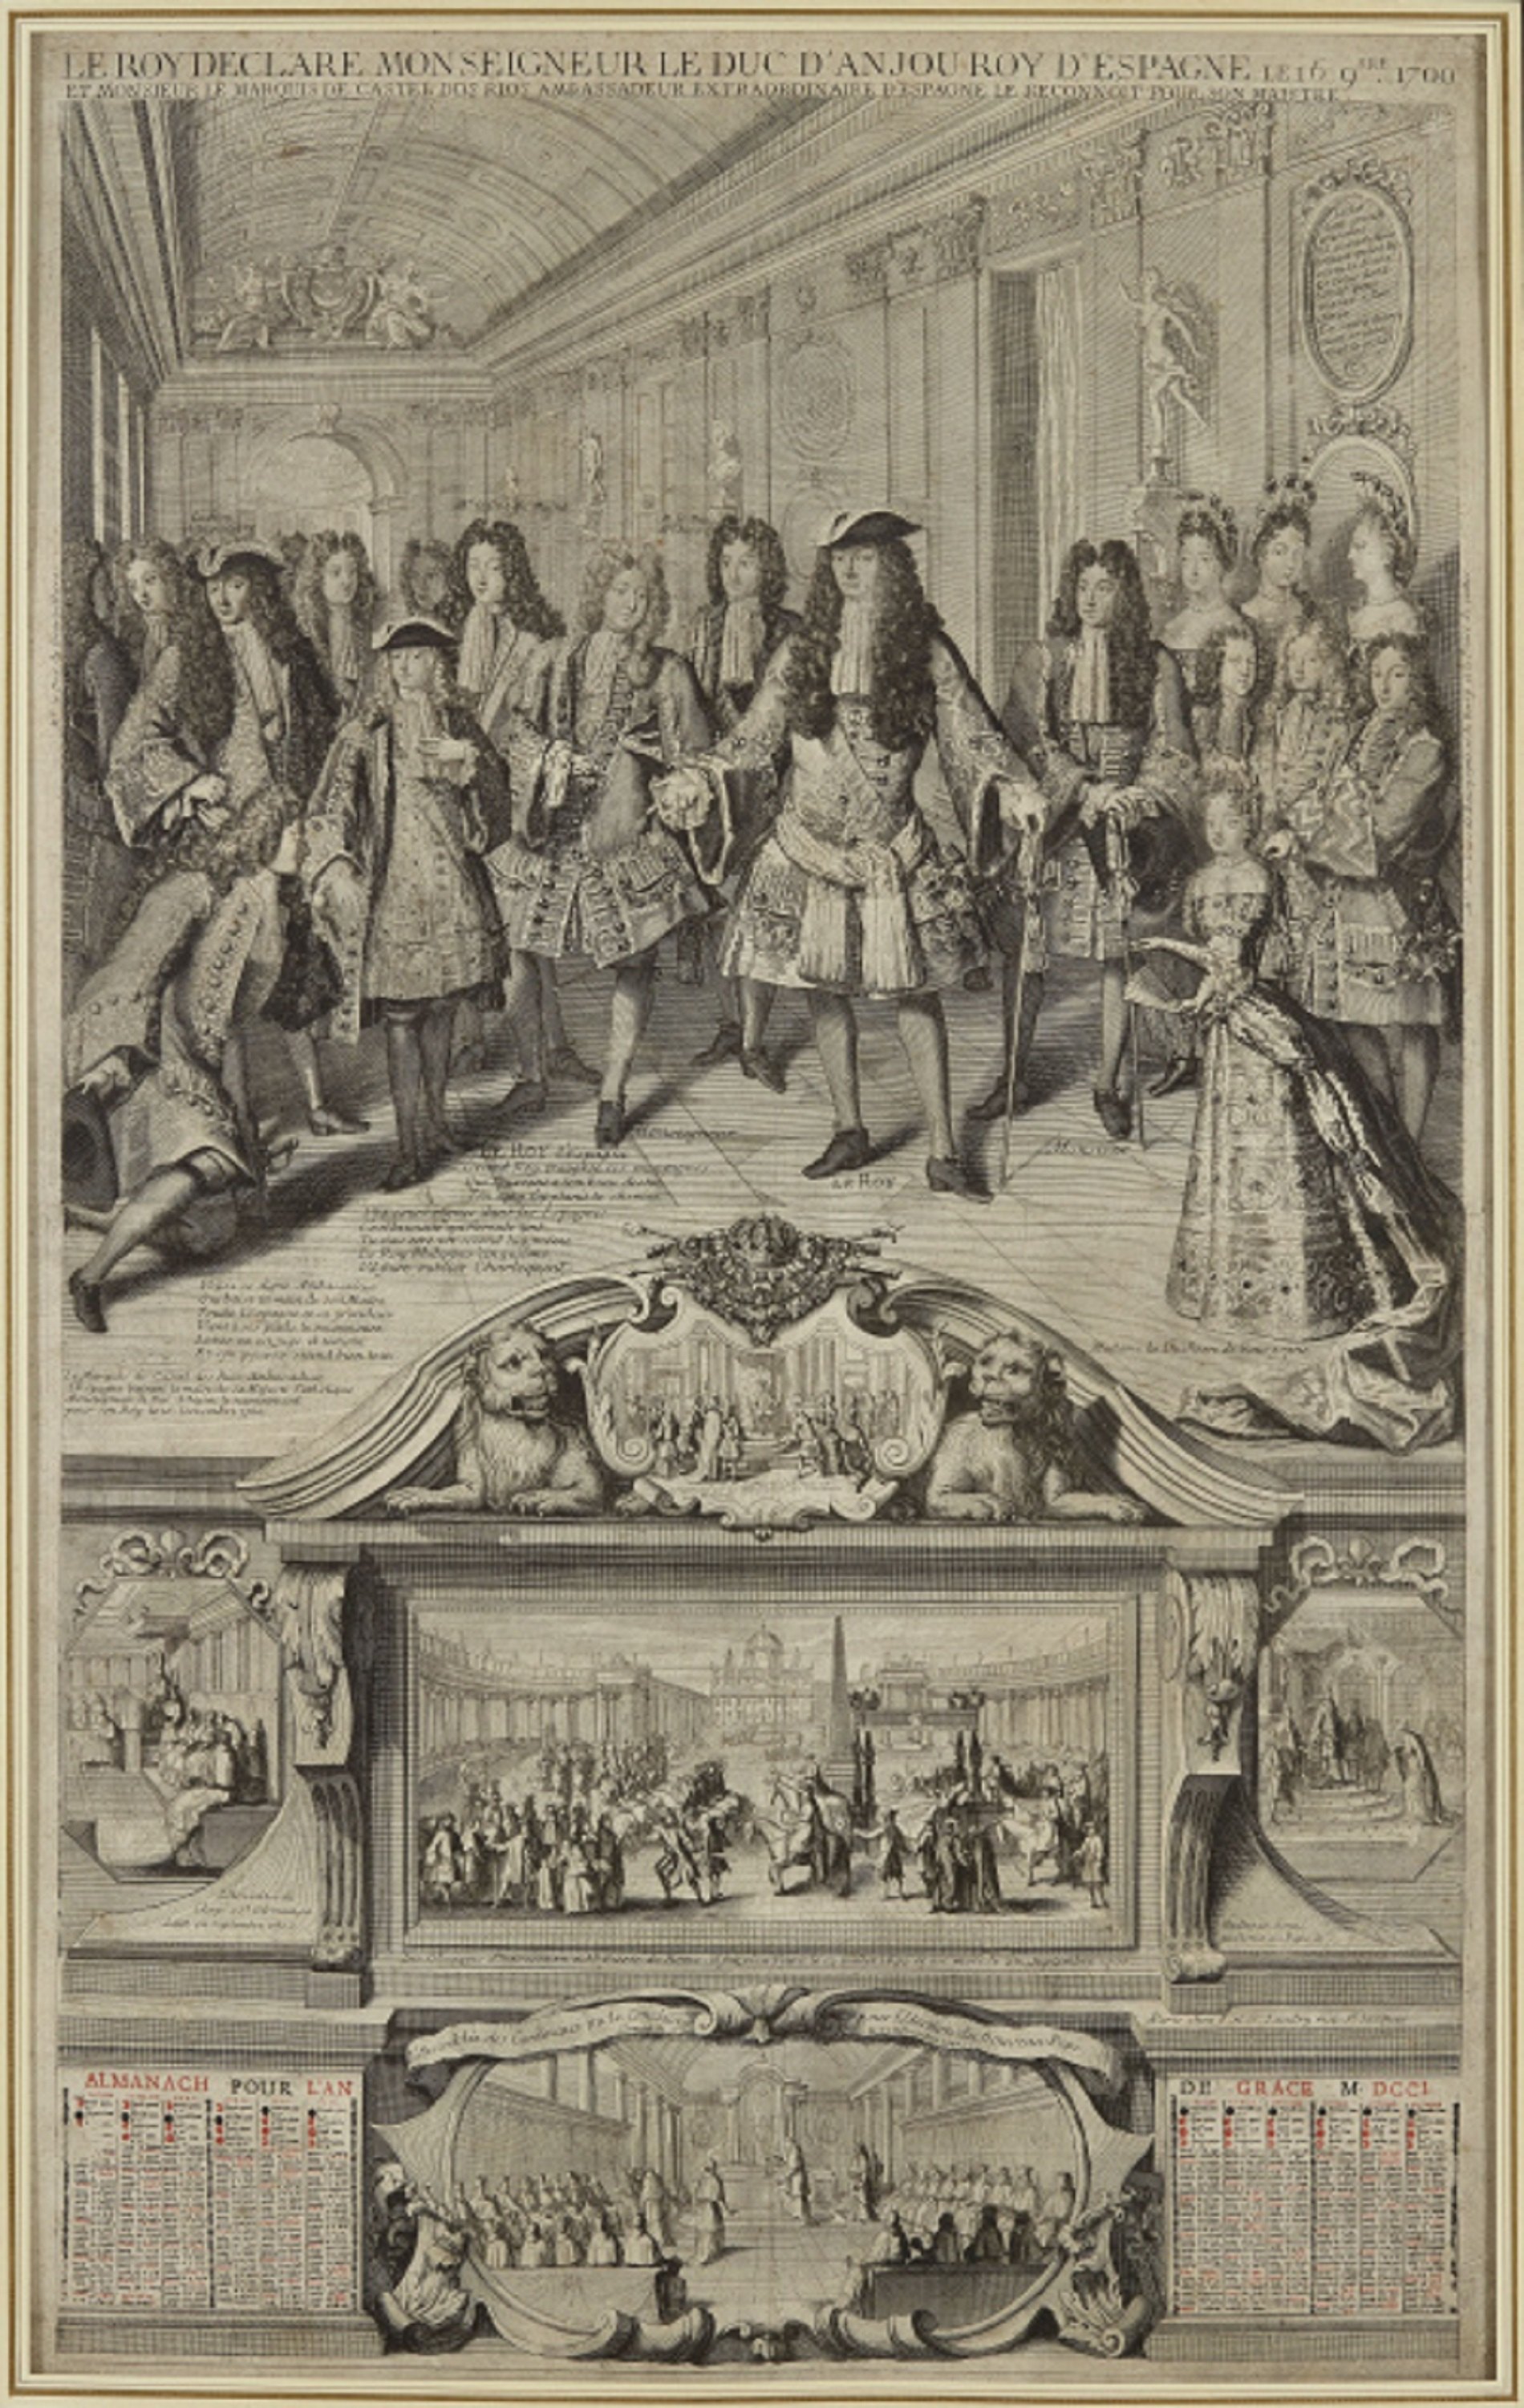 Almanac francès de 1701. Le Roi declare mon seigneur le duc d'Anjou roy d'Espagne. Font Museu Carnavalet. París